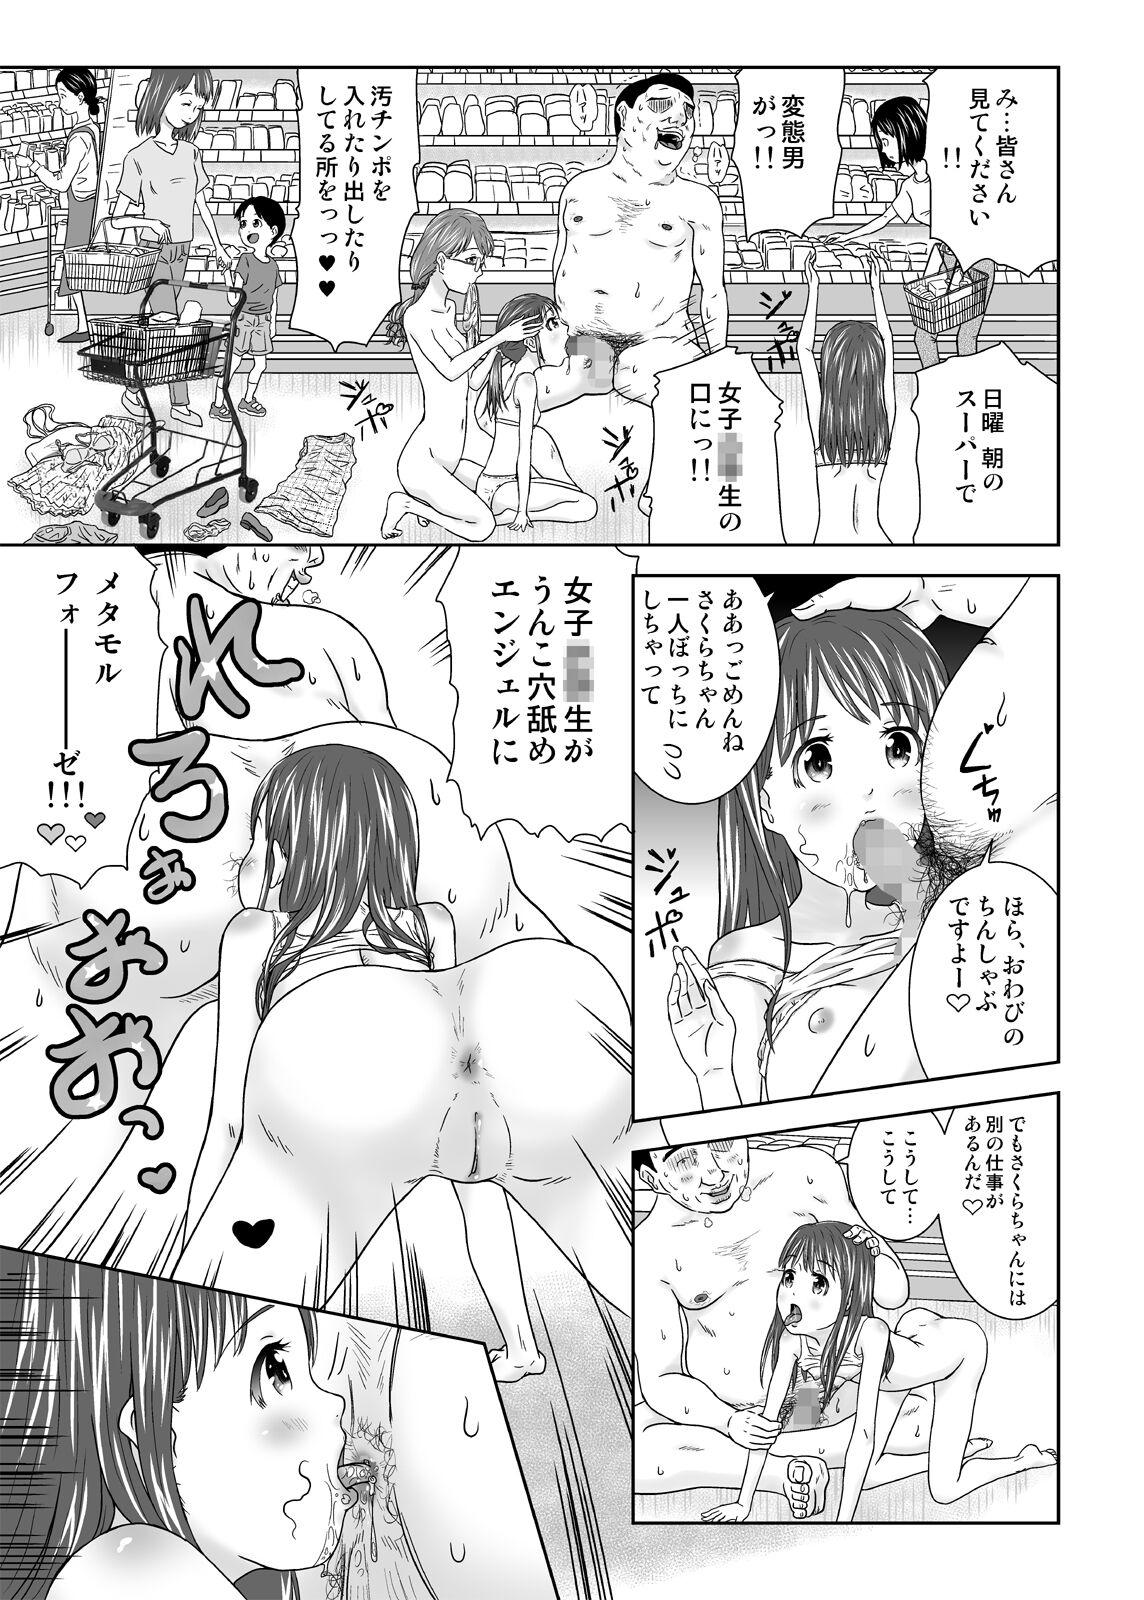 Sofa Moshimo Jikan ga Tomattara! 7 Byou - Original Squirting - Page 9